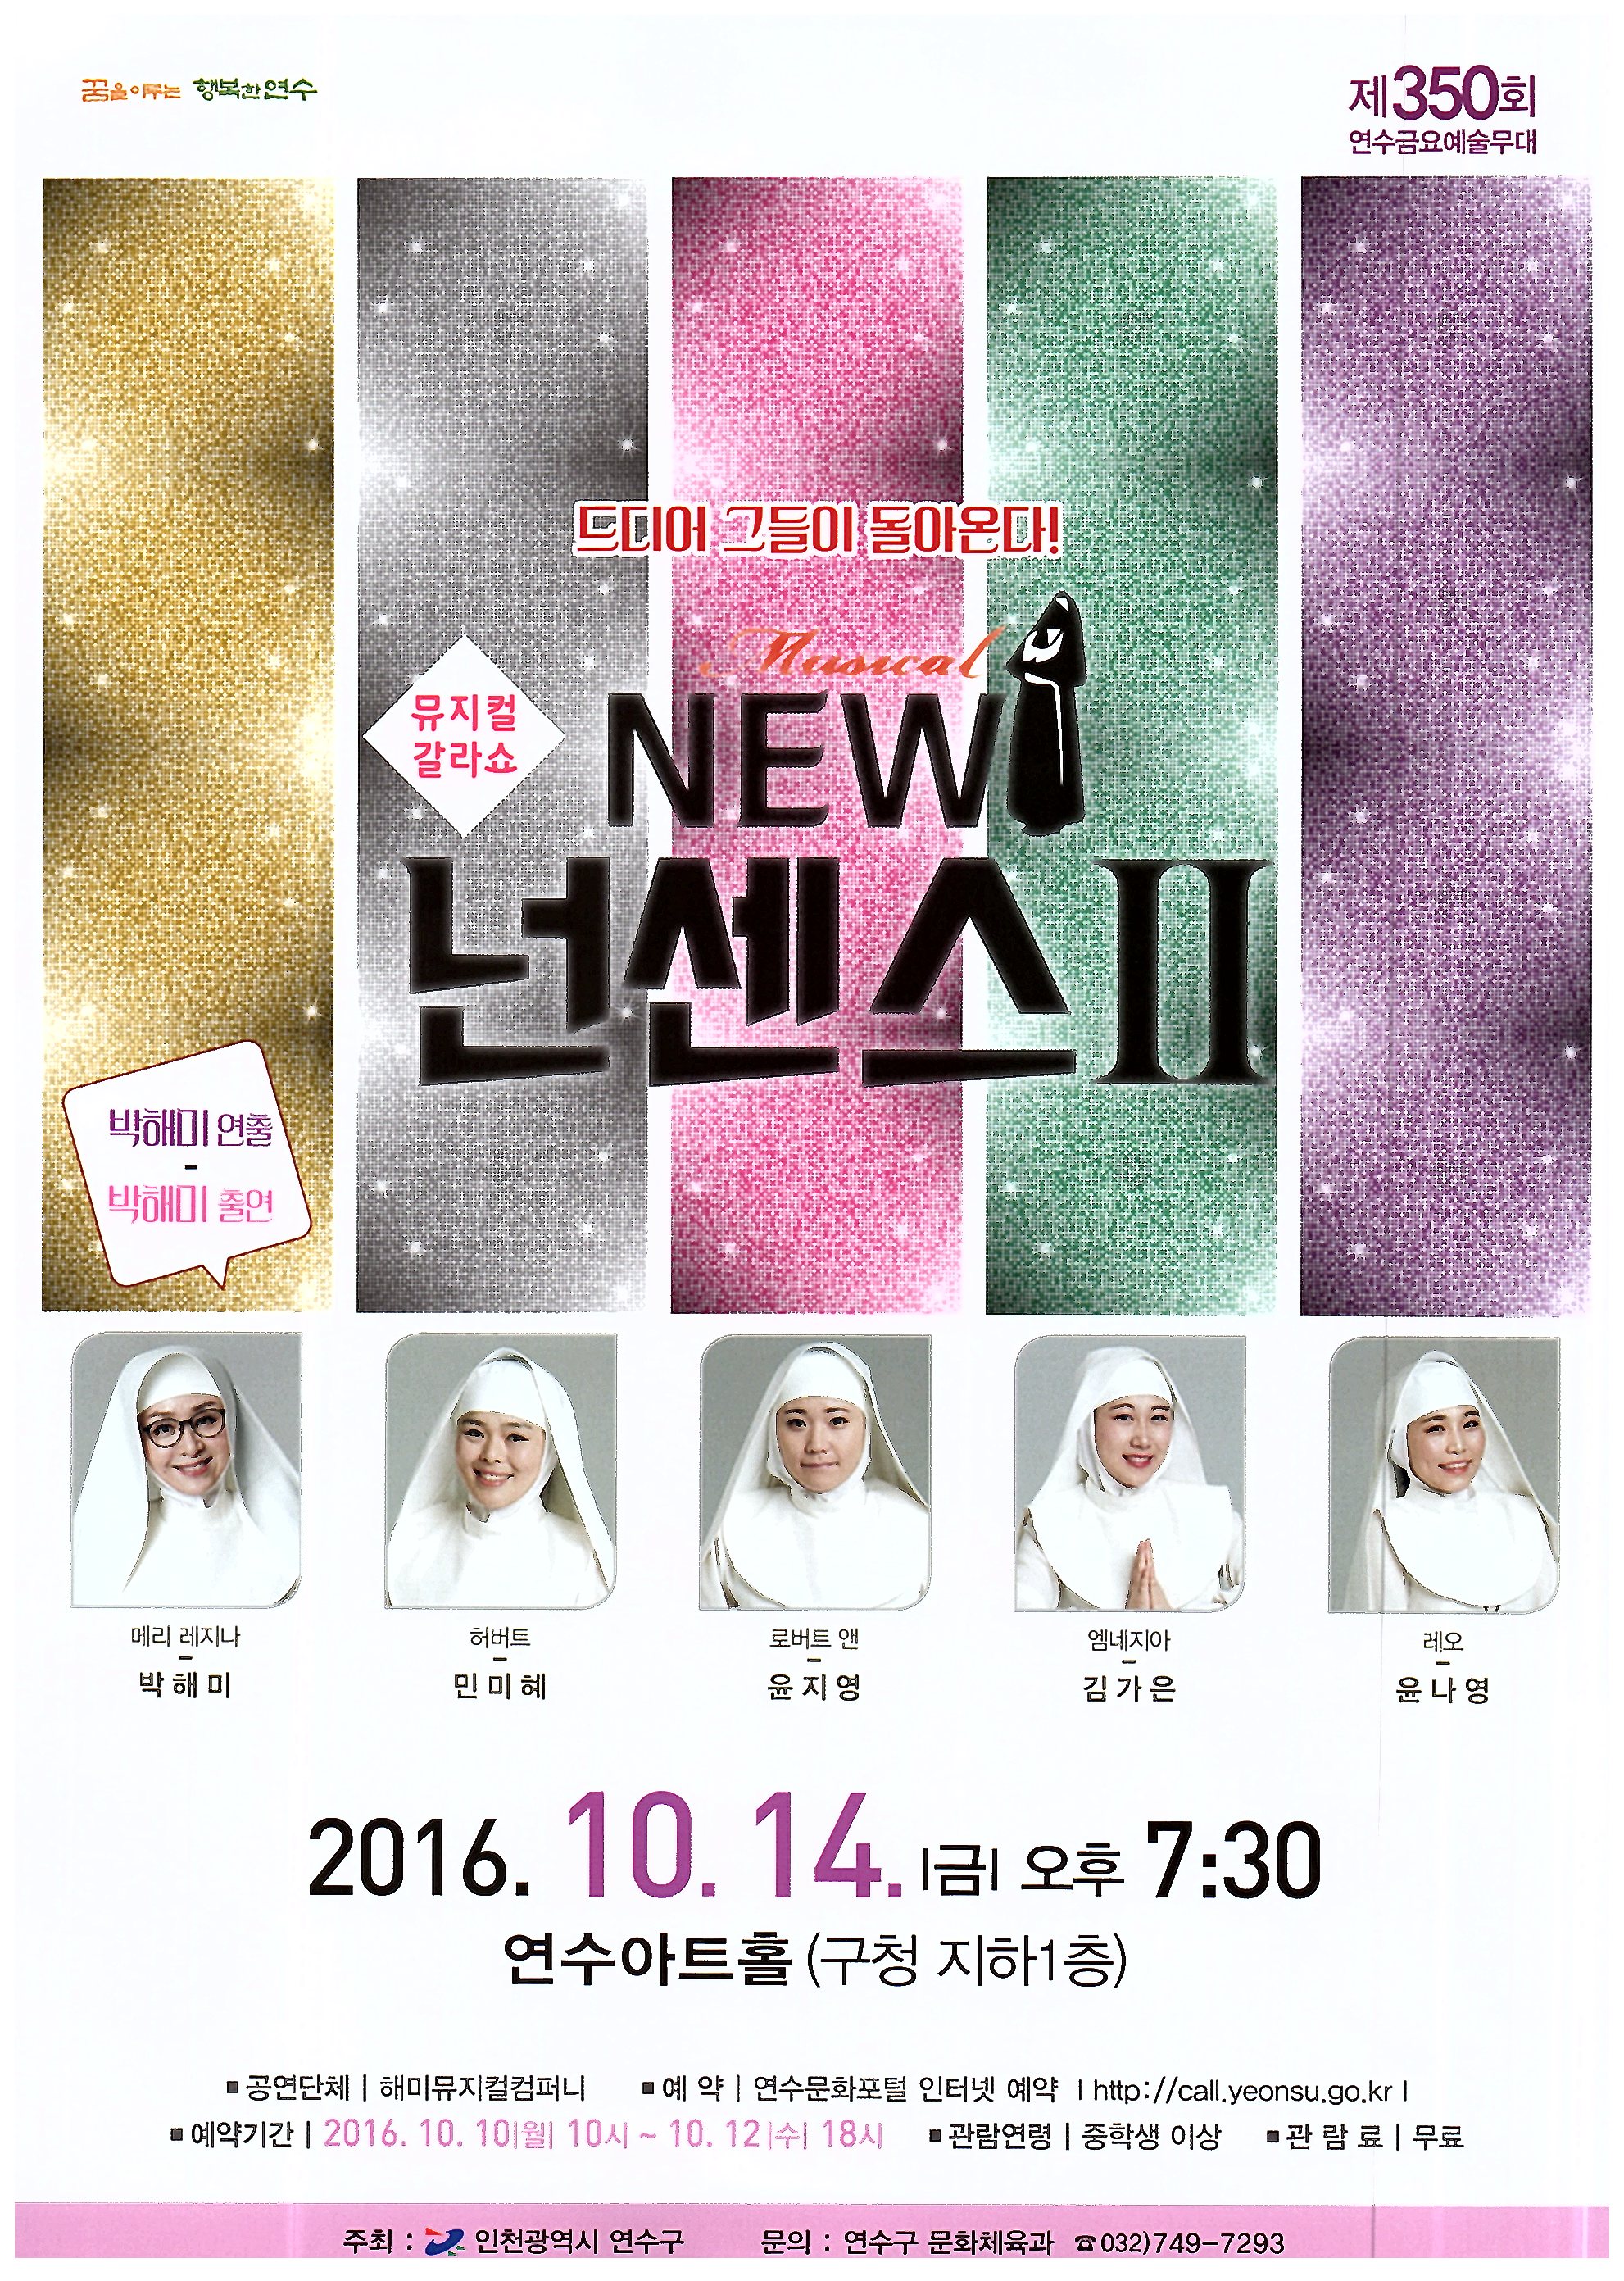 뮤지컬 갈라쇼  New 넌센스Ⅱ    박해미 연출, 박해미 출연 공연포스터 - 자세한 내용은 상세보기의 공연소개를 참고해주세요.